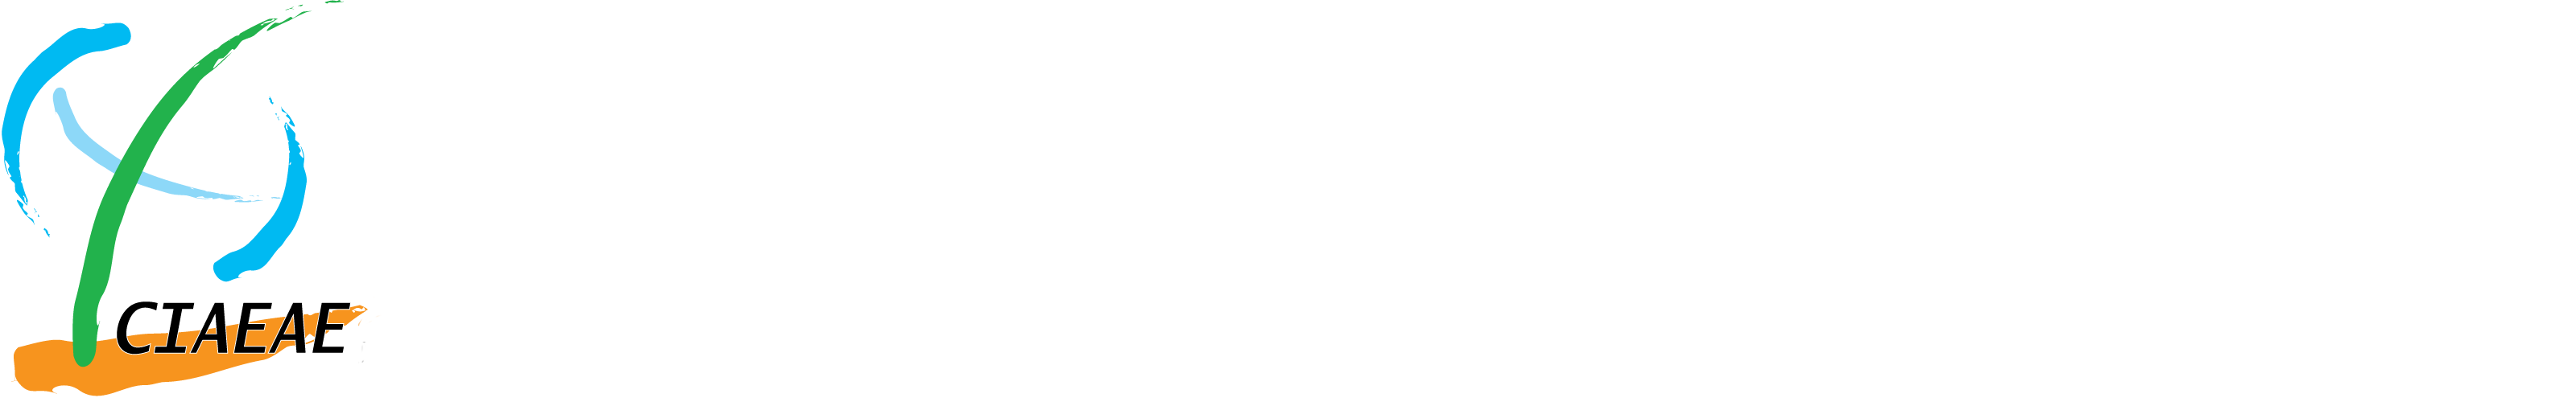 國際農業教育與學術交流中心的Logo